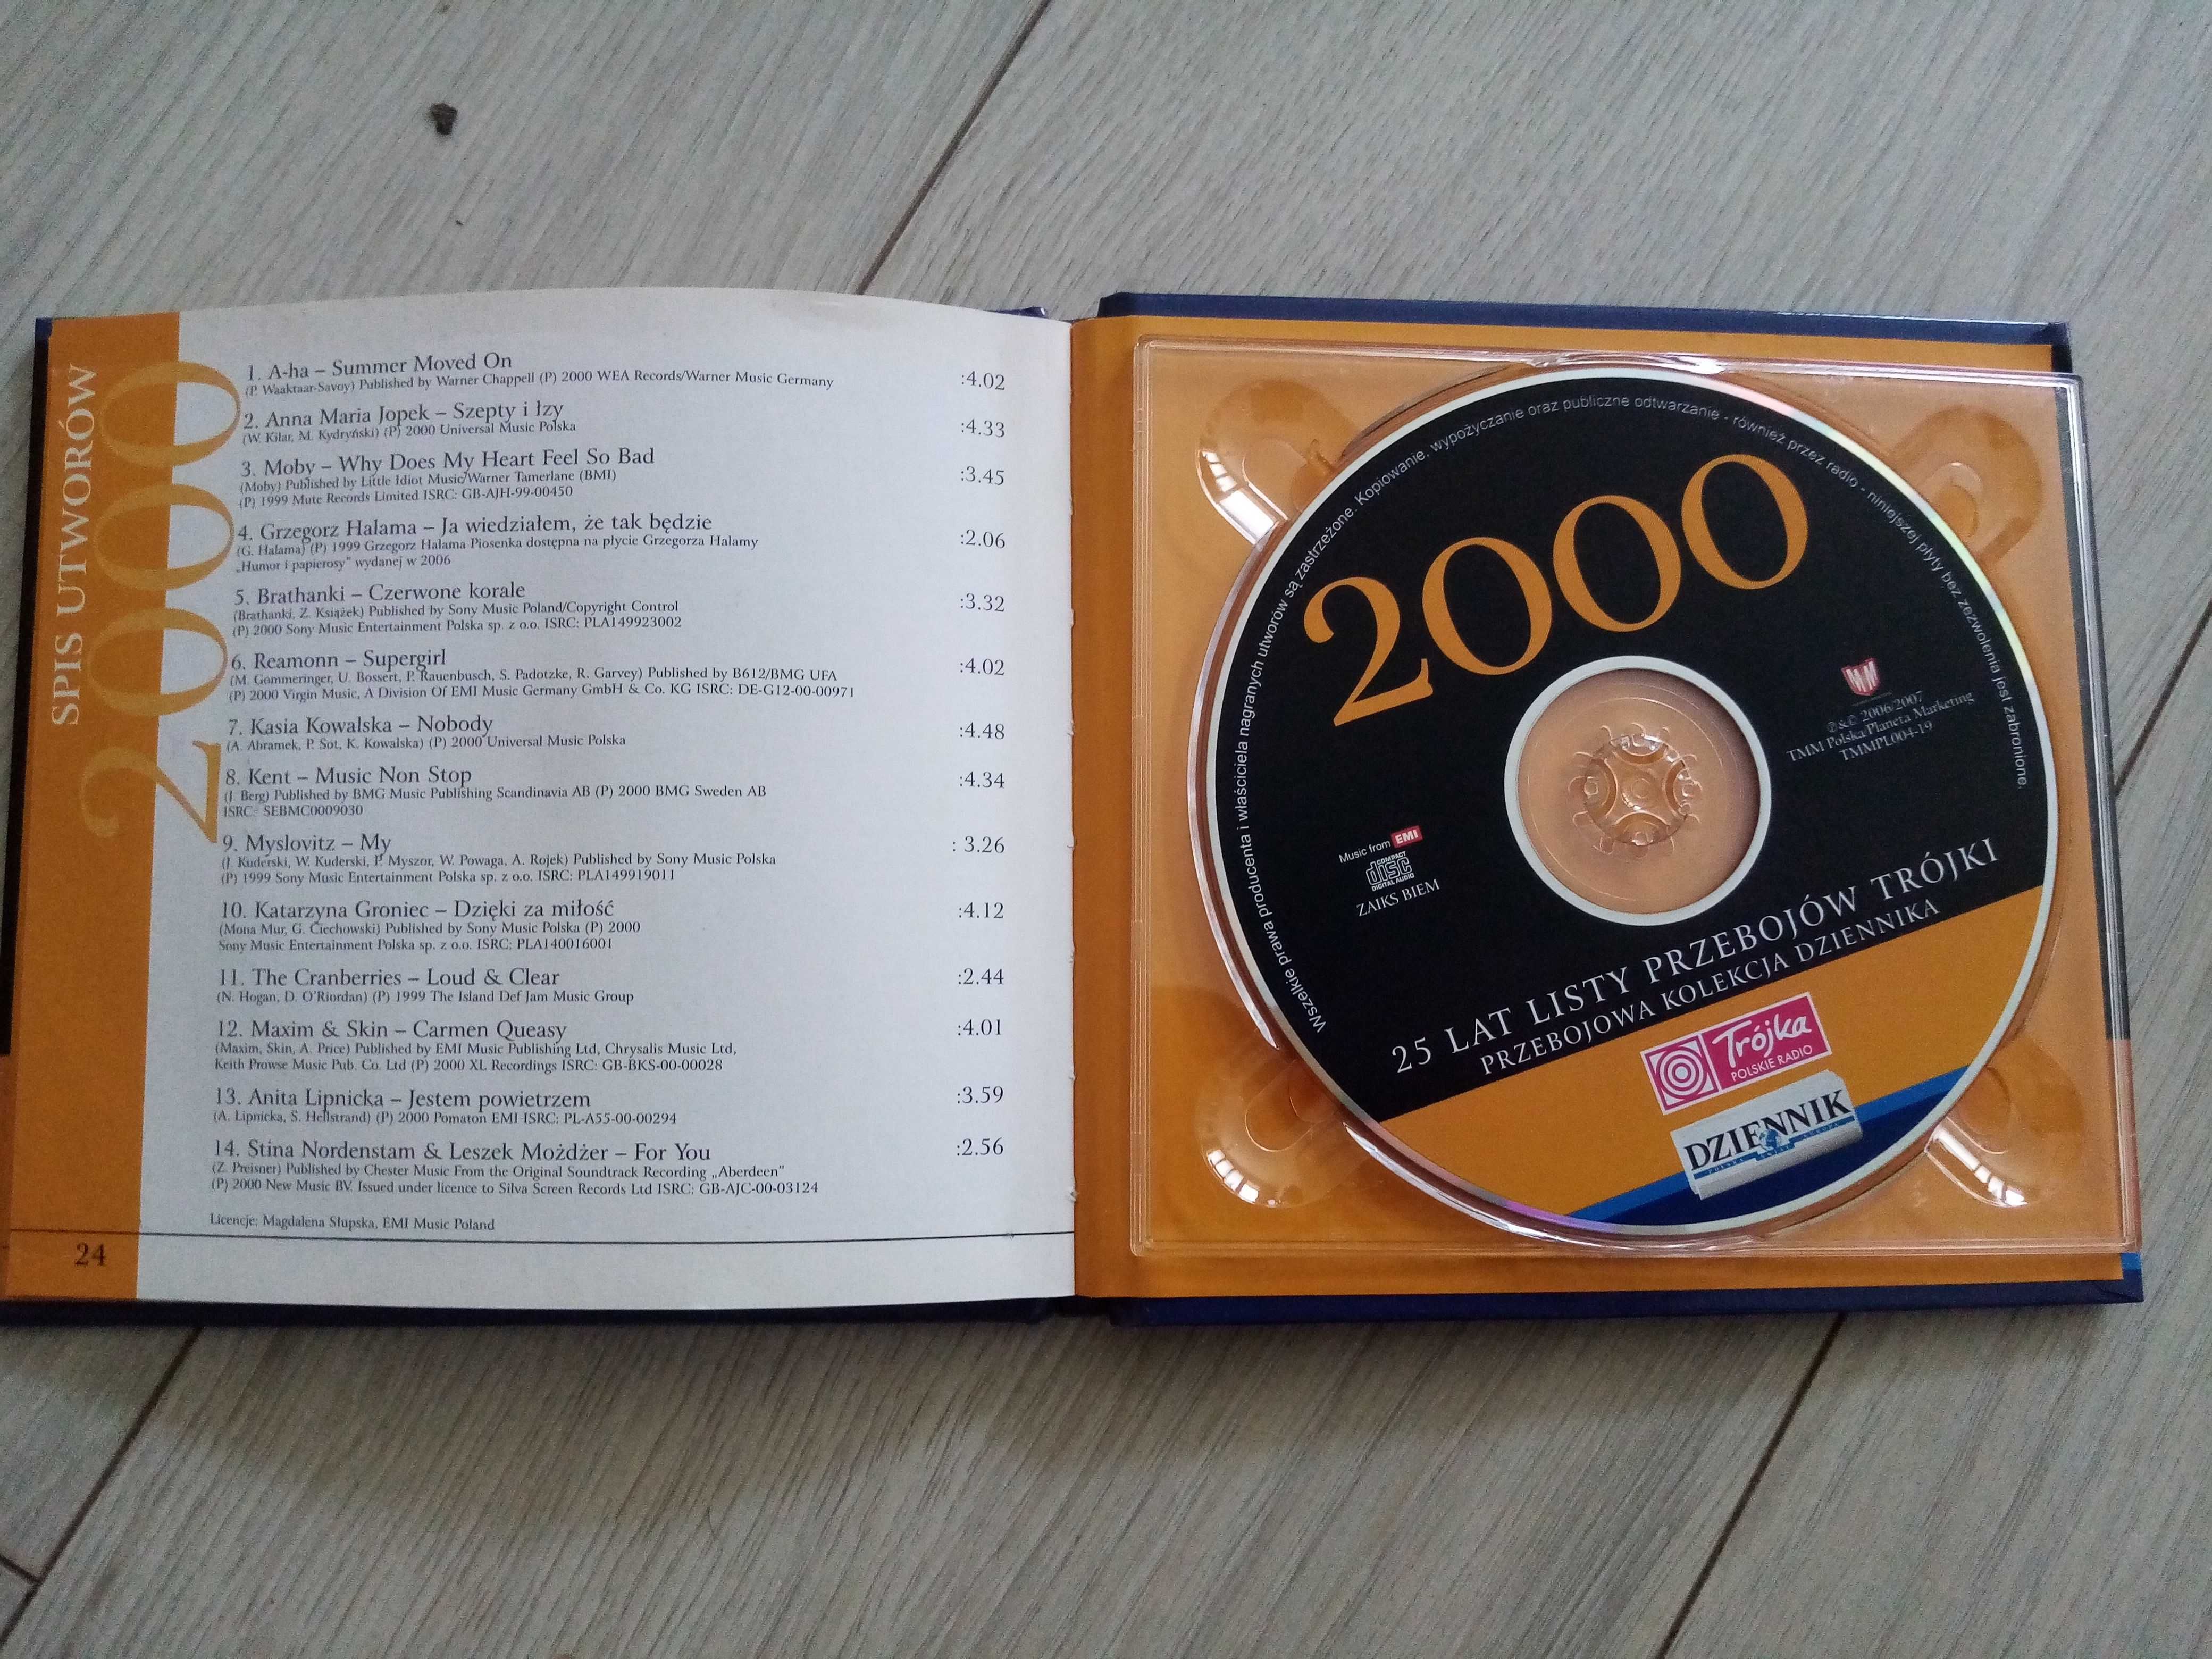 25 Lat Listy Przebojów Trójki (CD)